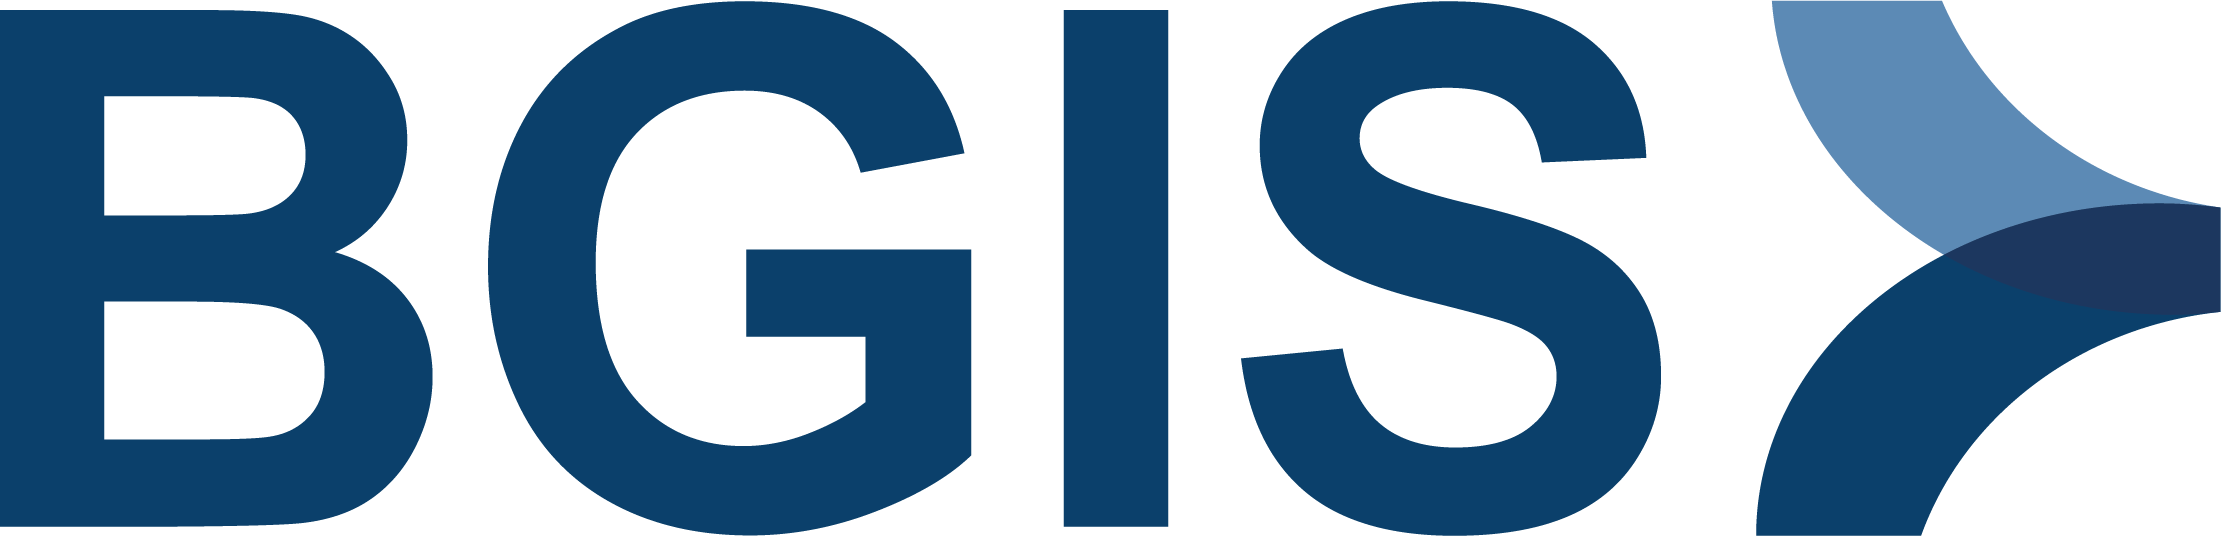 BGIS logo.png